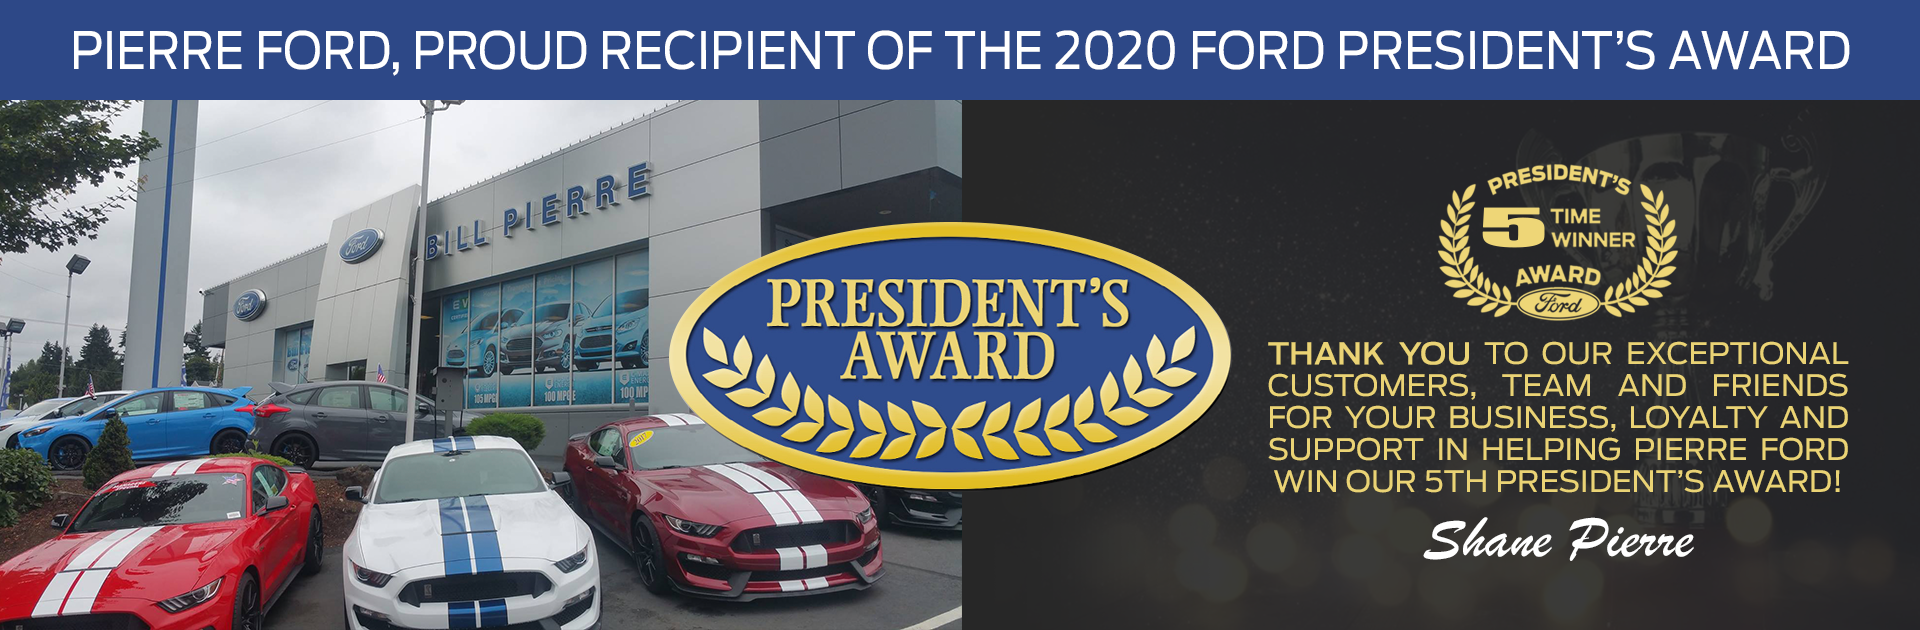 2020 Ford President's Award Winner